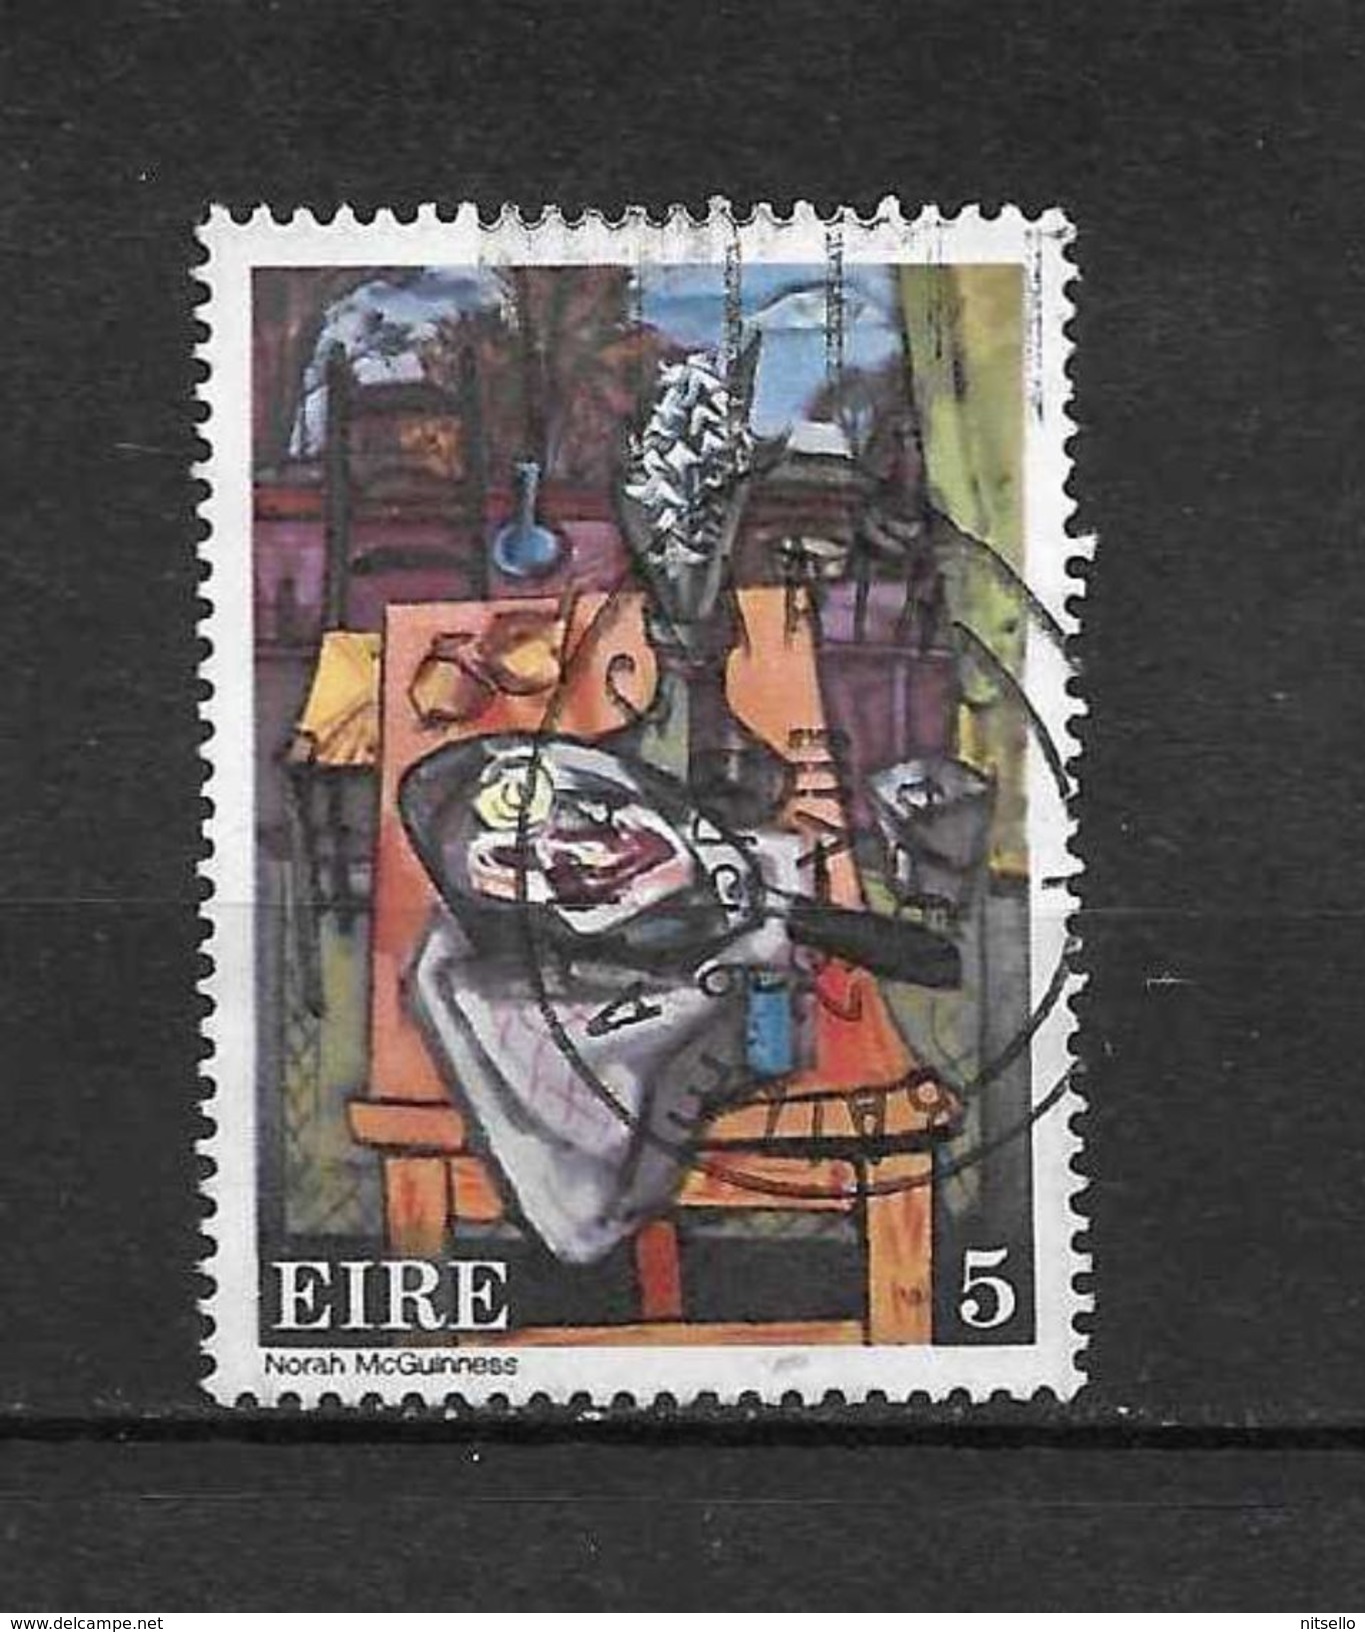 LOTE  1472   ////  (C005)  IRLANDA  EIRE 1974  YVERT Nº: 308 - Used Stamps